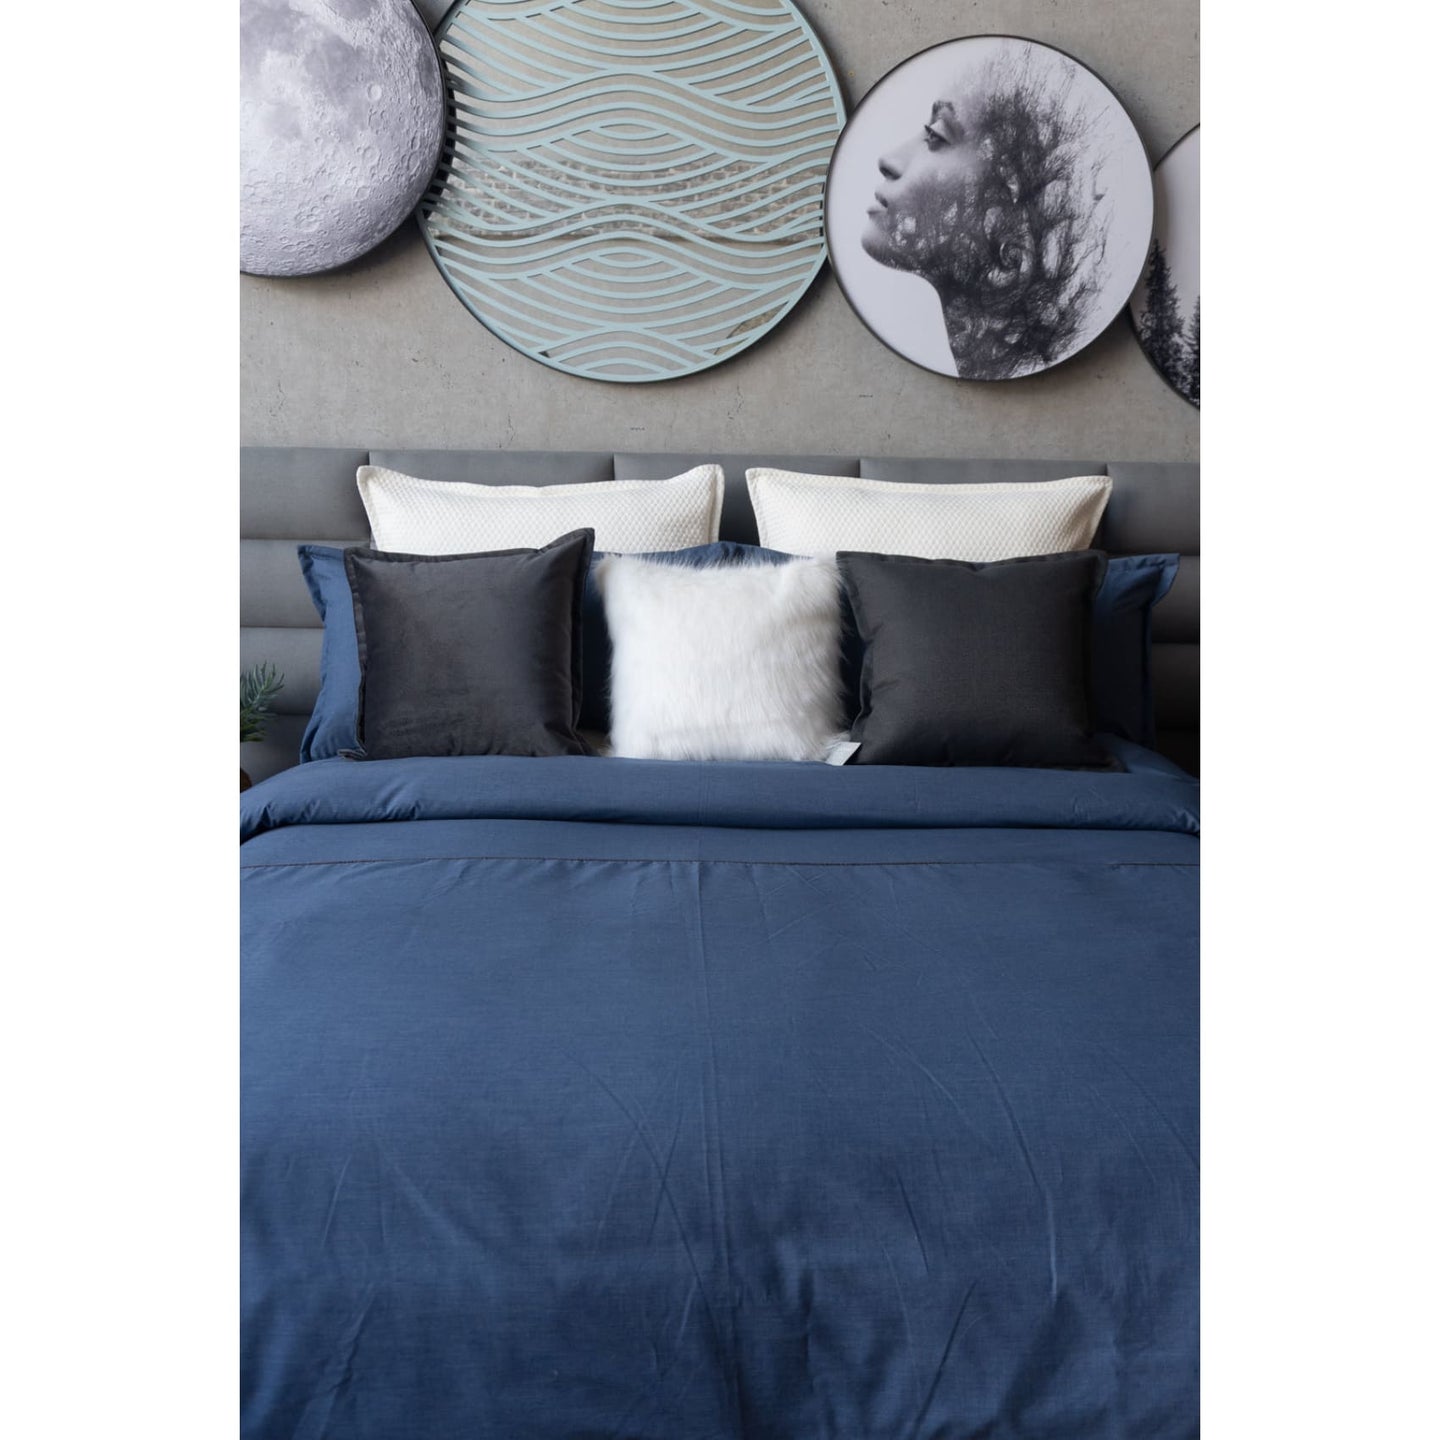 Set Duvet Indigo Azul, decorativo, plumón, cama, habitación, acolchado, edredon, duvet